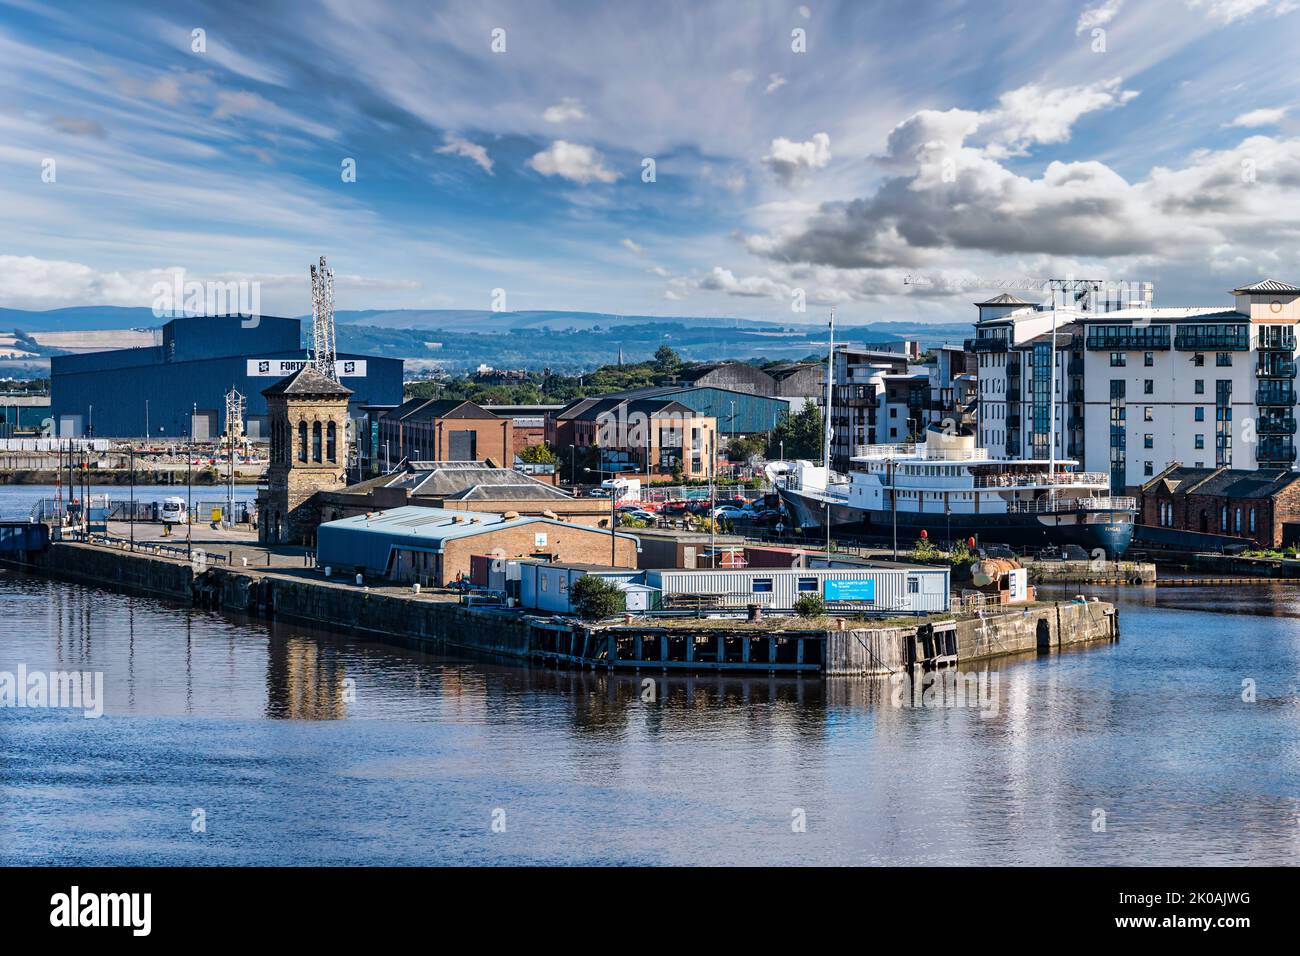 Vue sur le quai de Leith Harbour avec le navire flottant Forth ports Big Blue Shed & Fingal, Édimbourg, Écosse, Royaume-Uni Banque D'Images